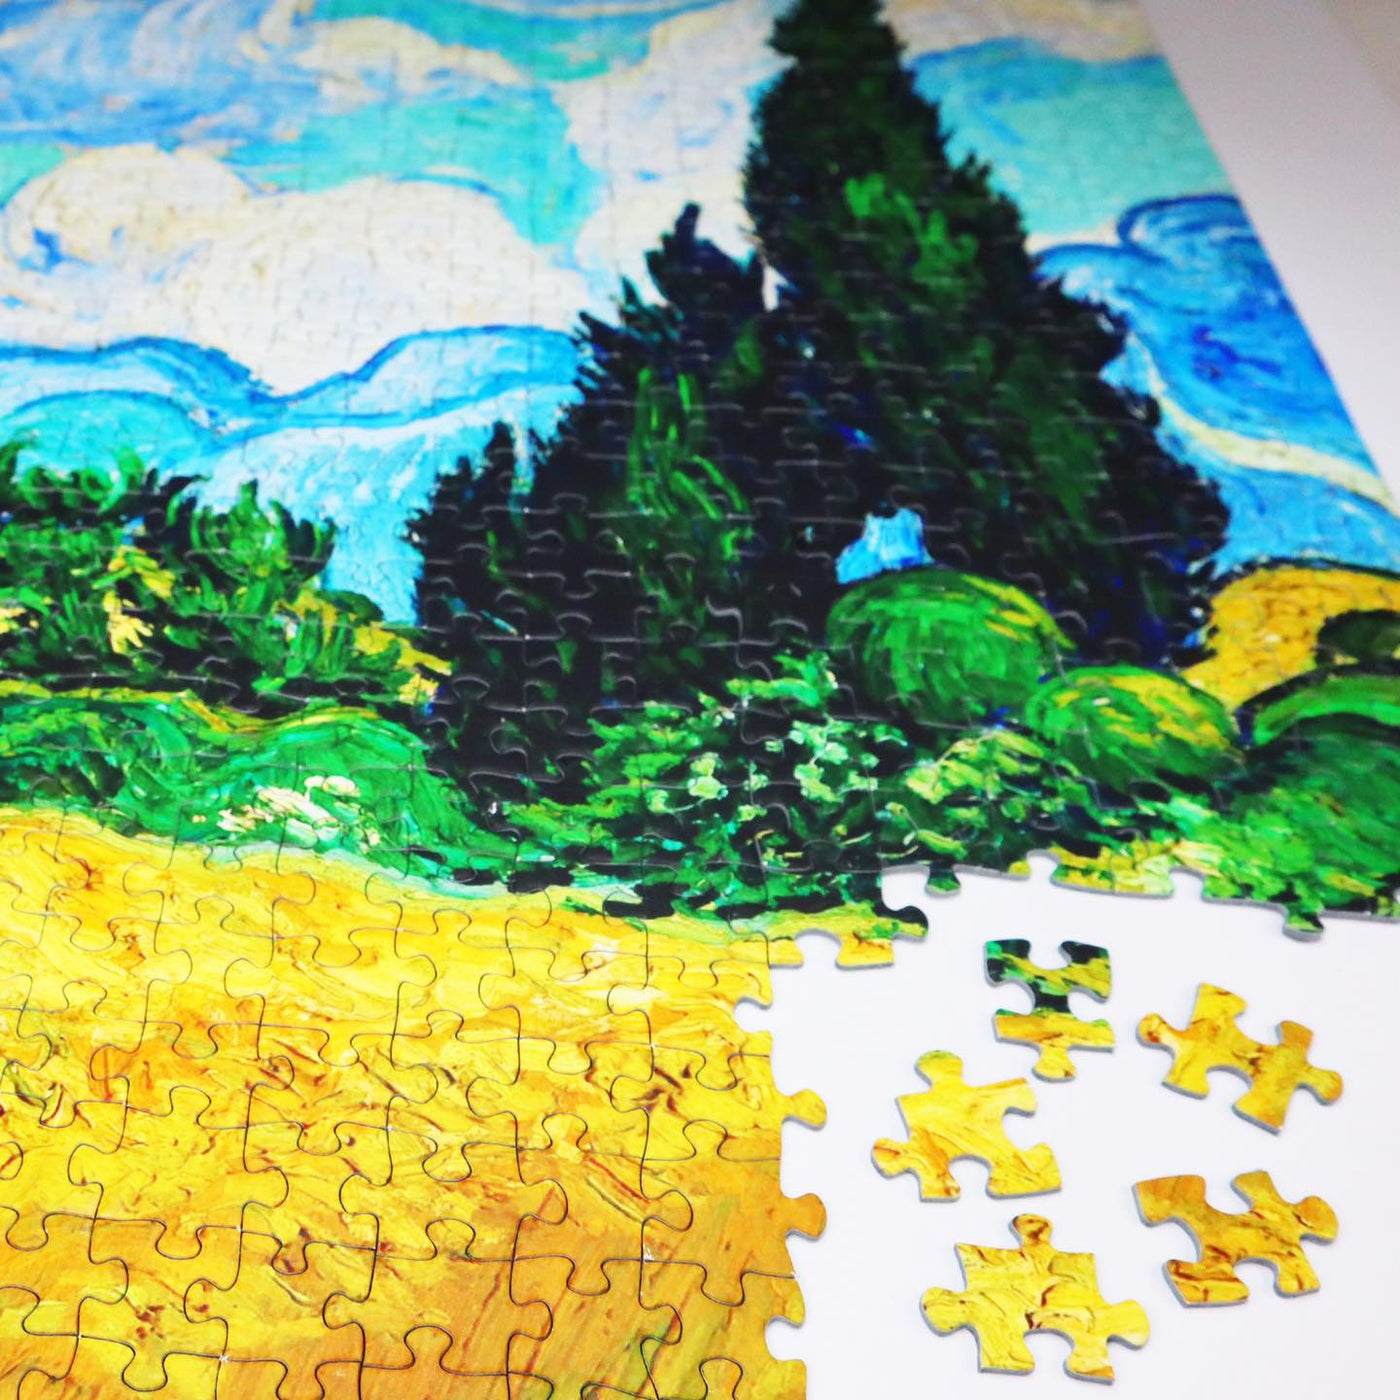 1000 piece jigsaw puzzle